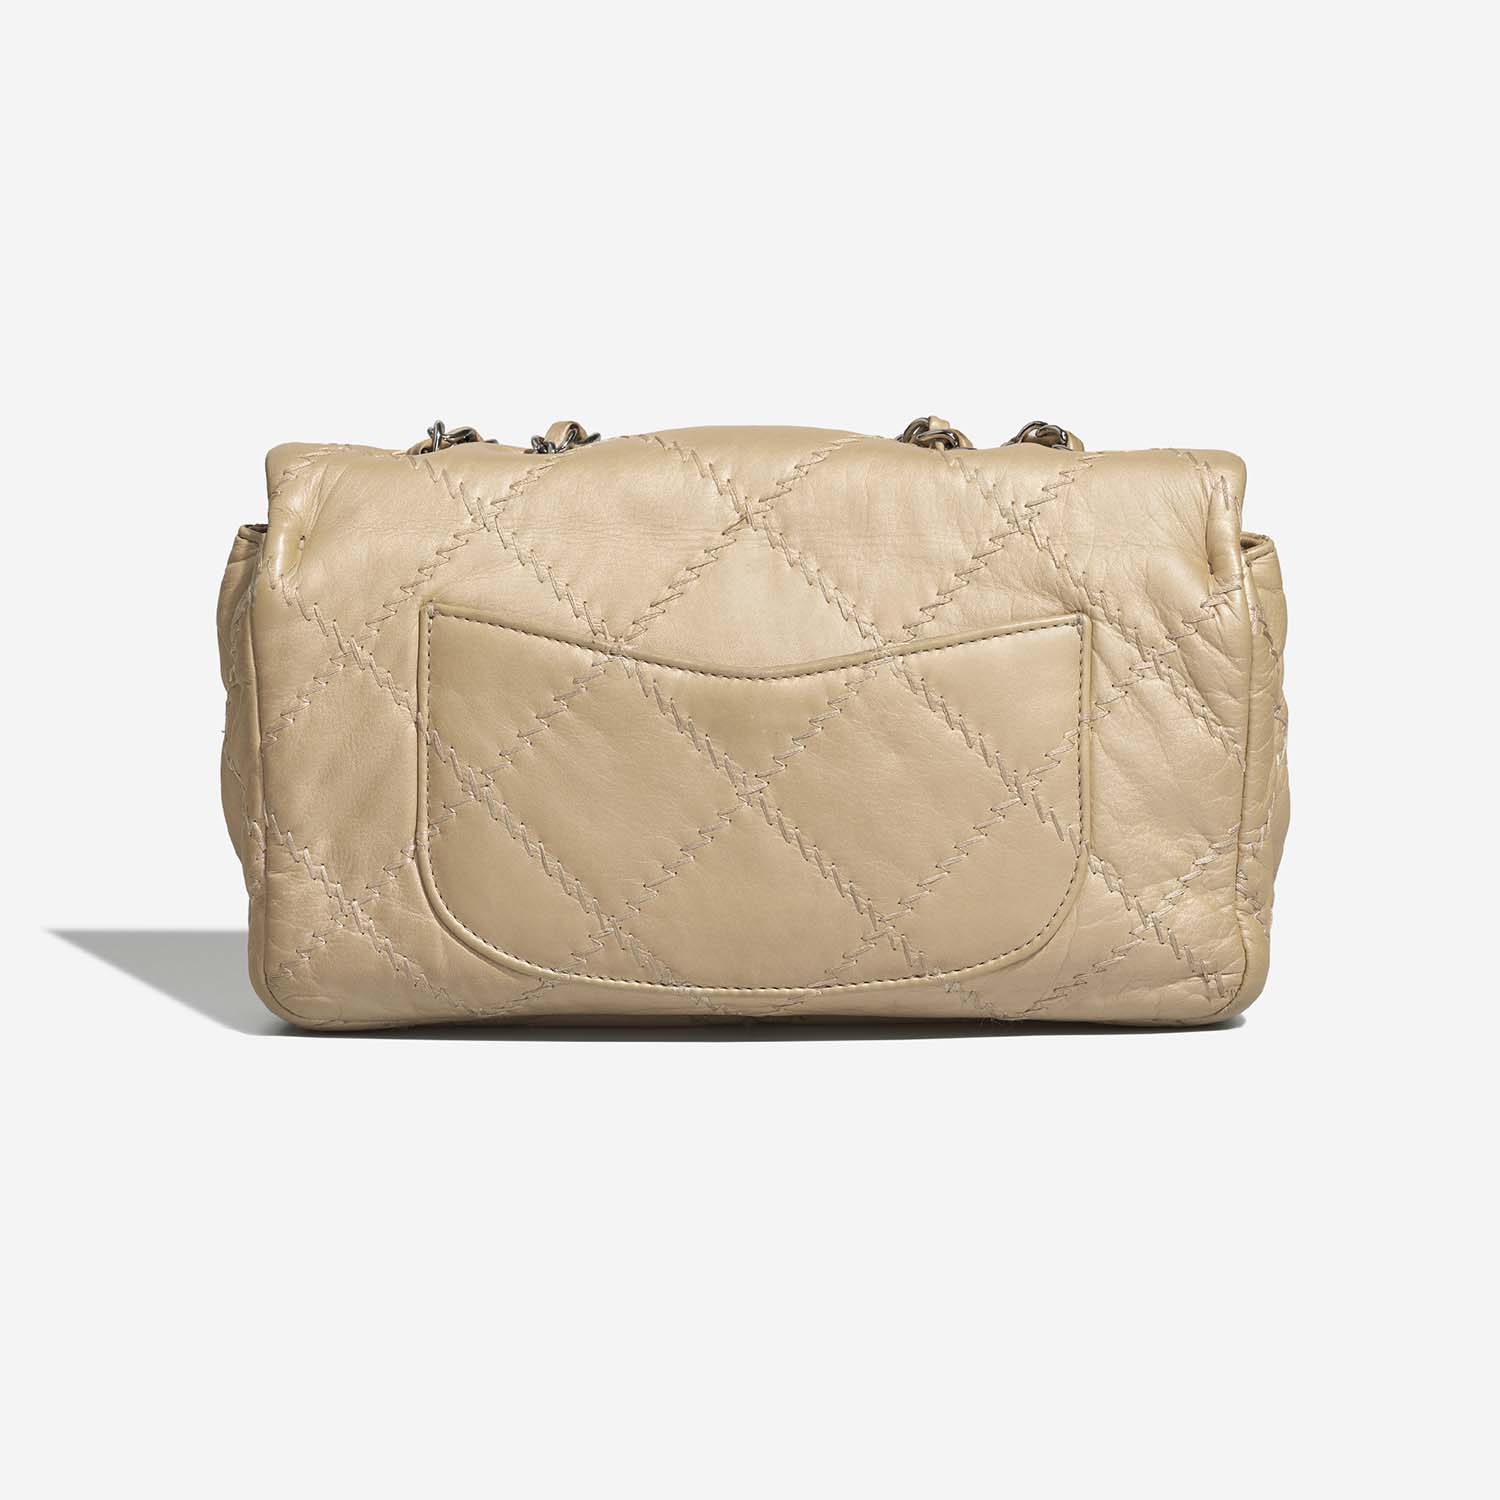 Chanel Timeless Medium Beige Back | Verkaufen Sie Ihre Designer-Tasche auf Saclab.com